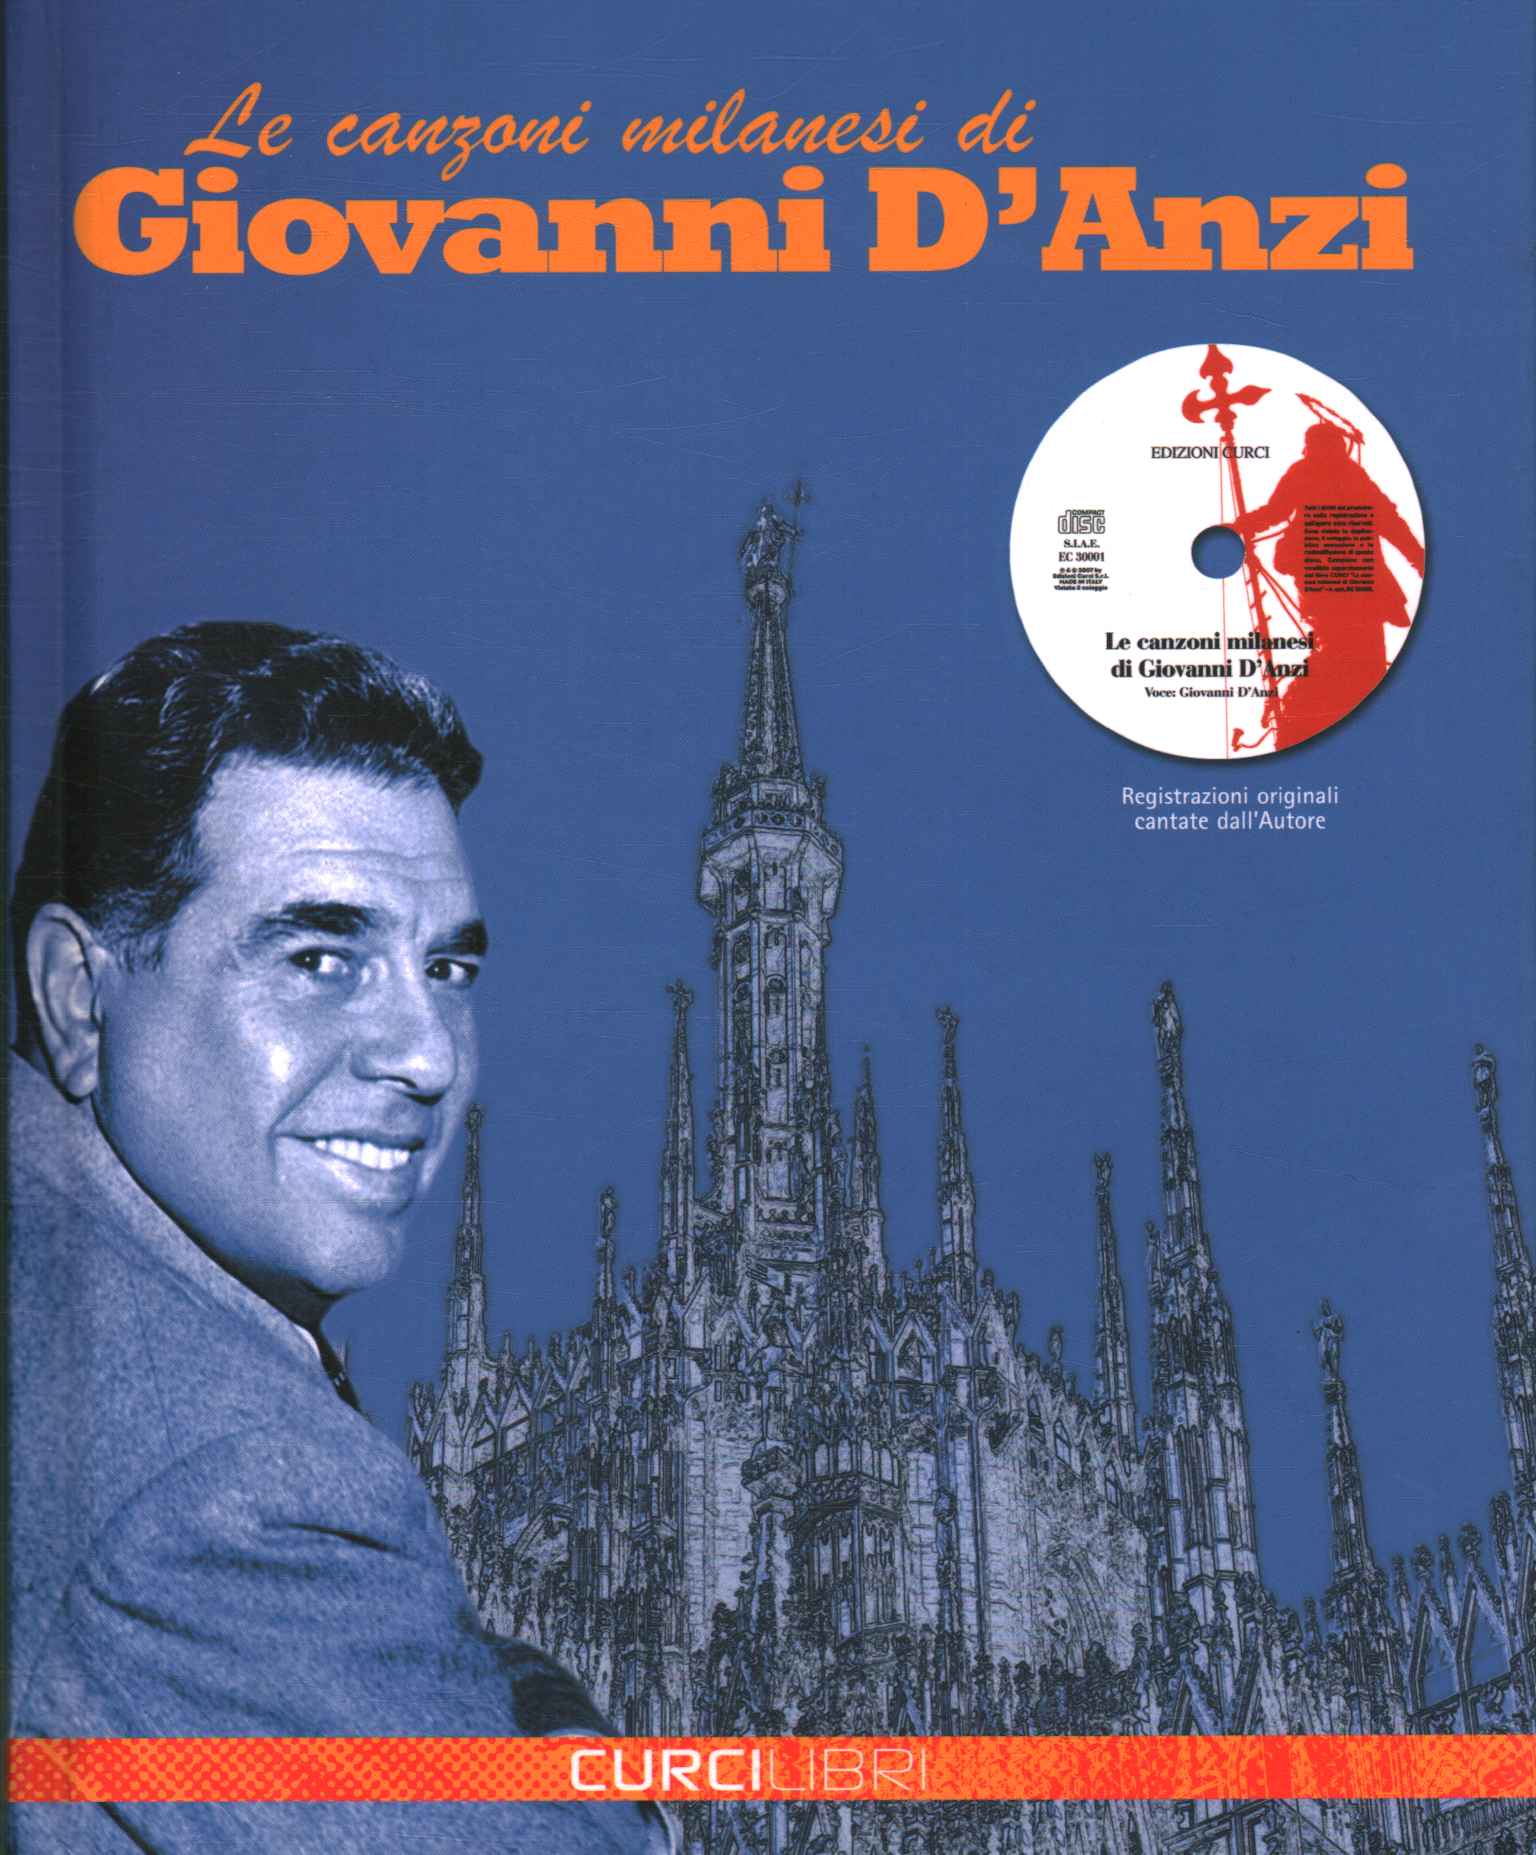 Las canciones milanesas de Giovanni d0apostr